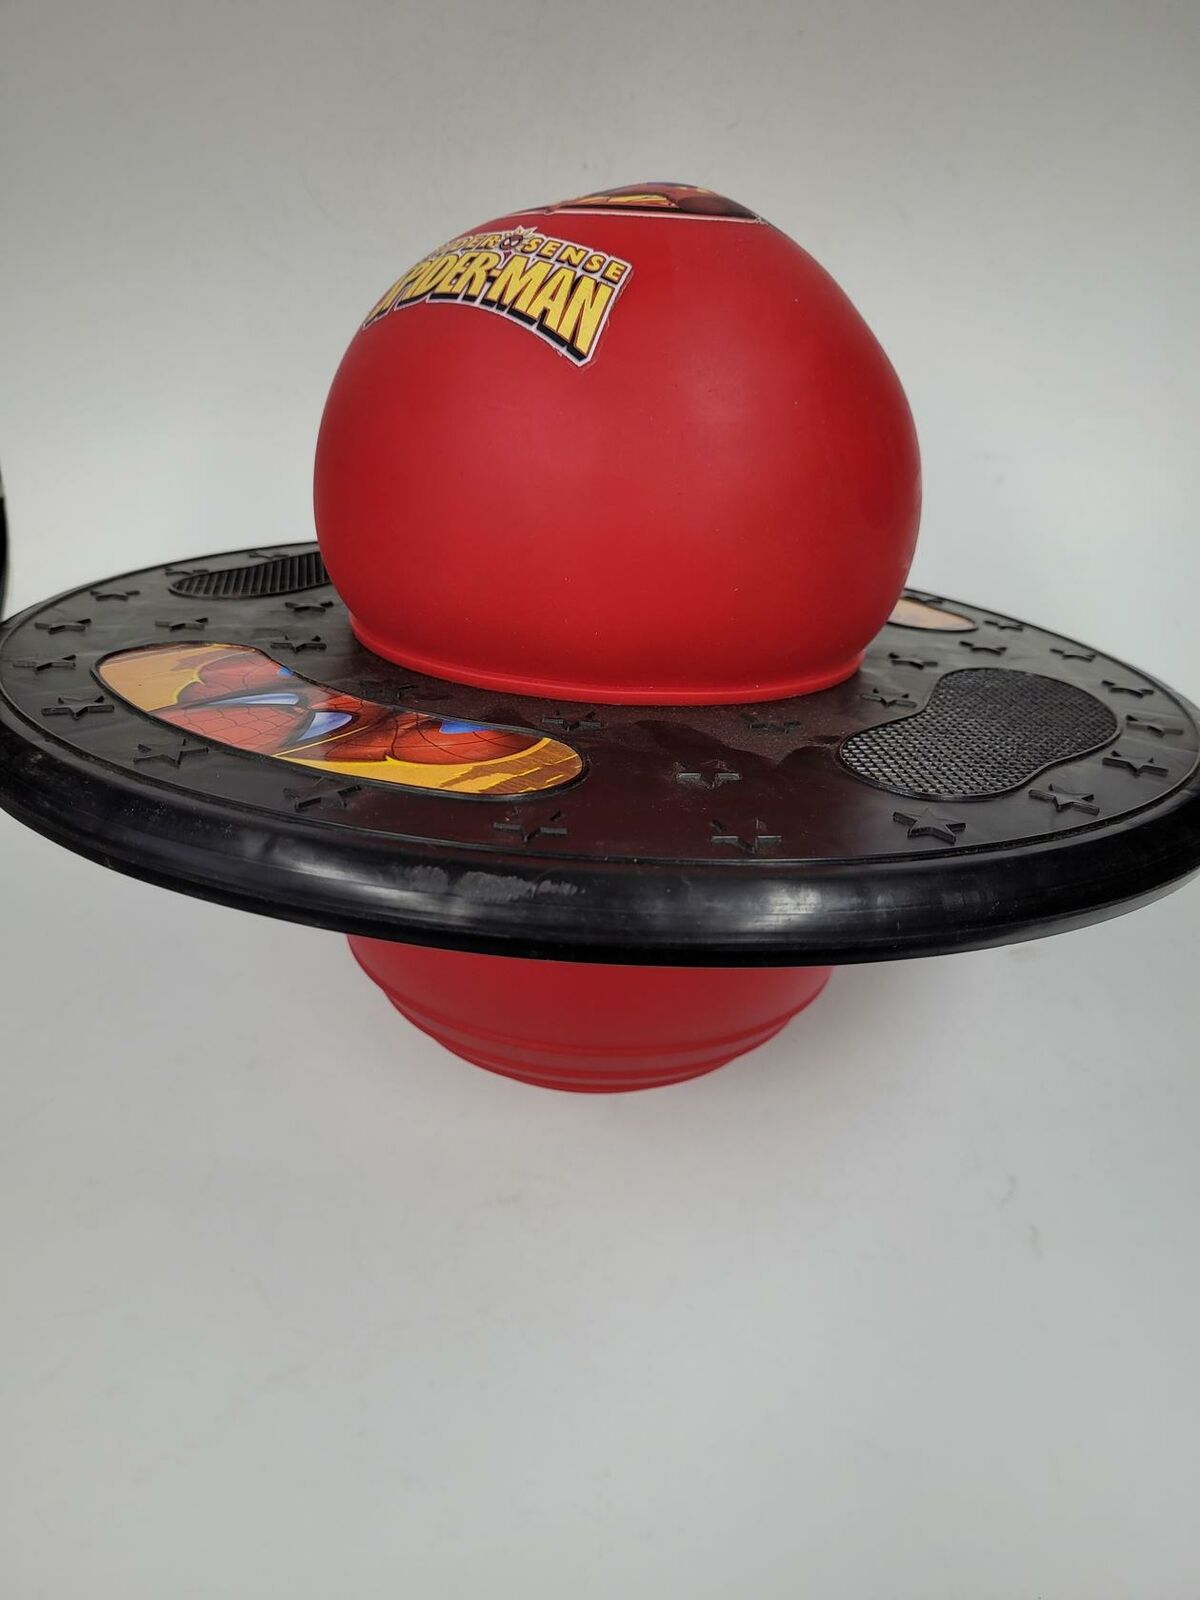 Marvel Spider-Man Pogo Ball